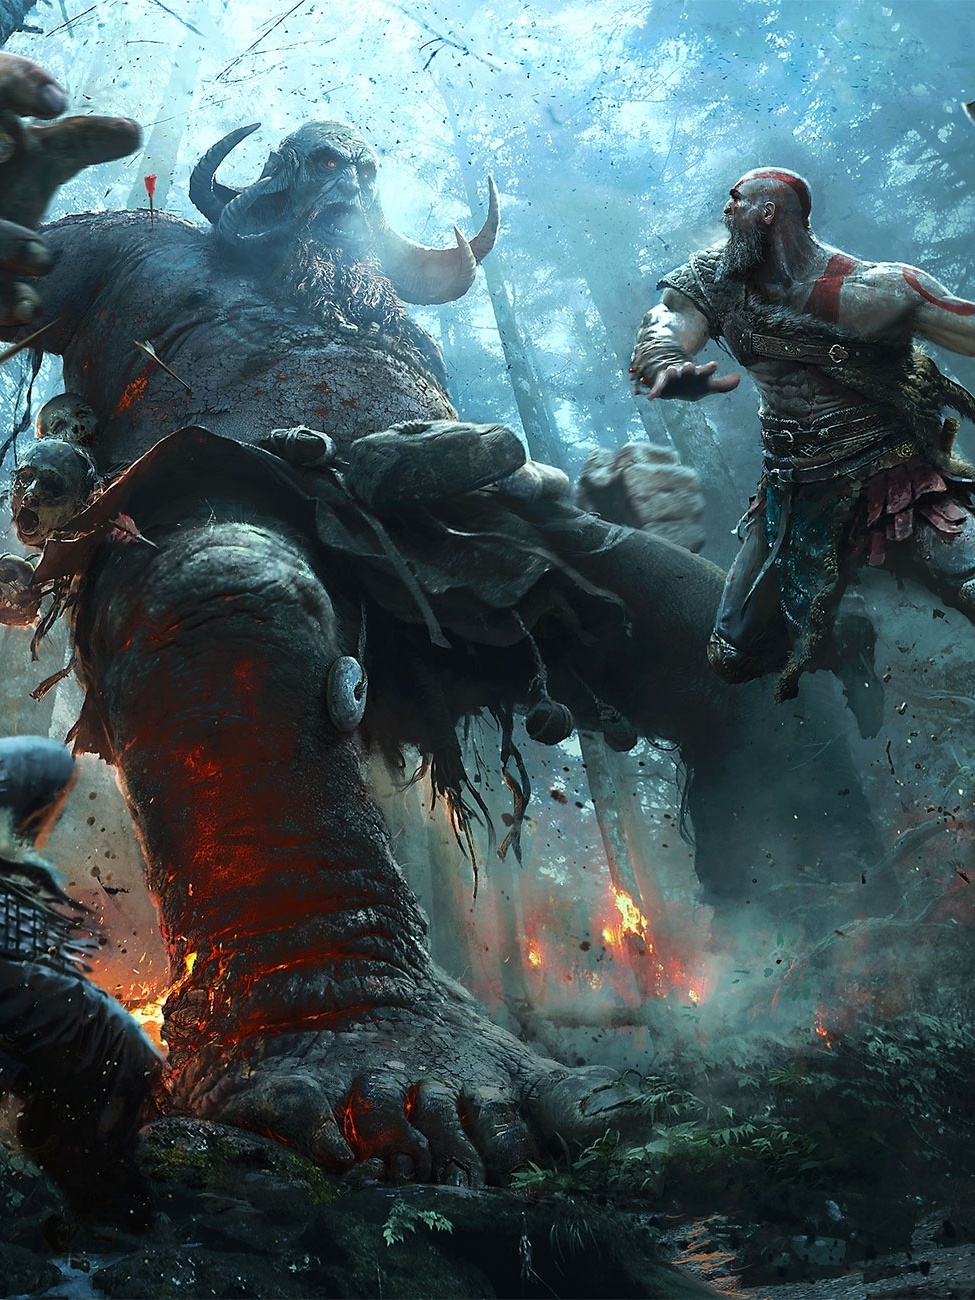 God of War chega em abril: tudo o que sabemos sobre o game de PS4